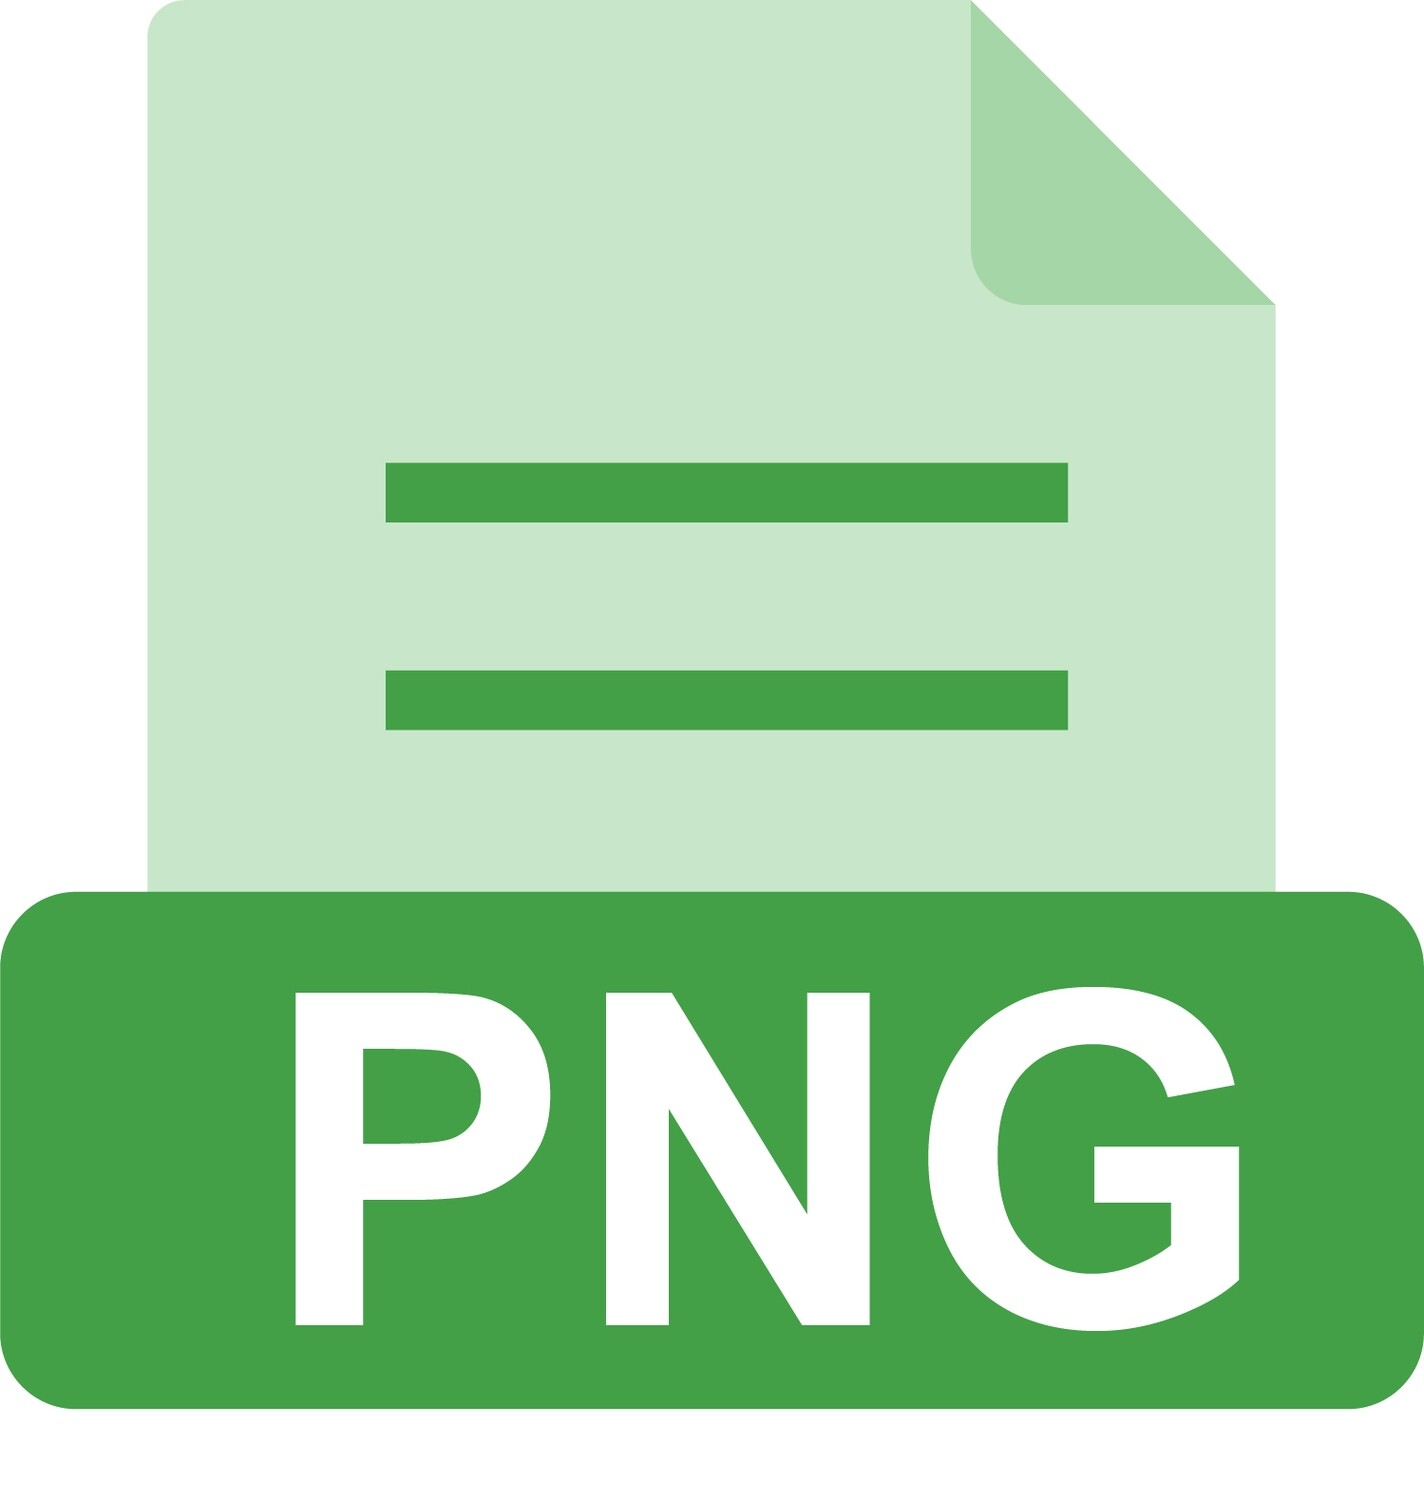 E-File: PNG, PE Delaware